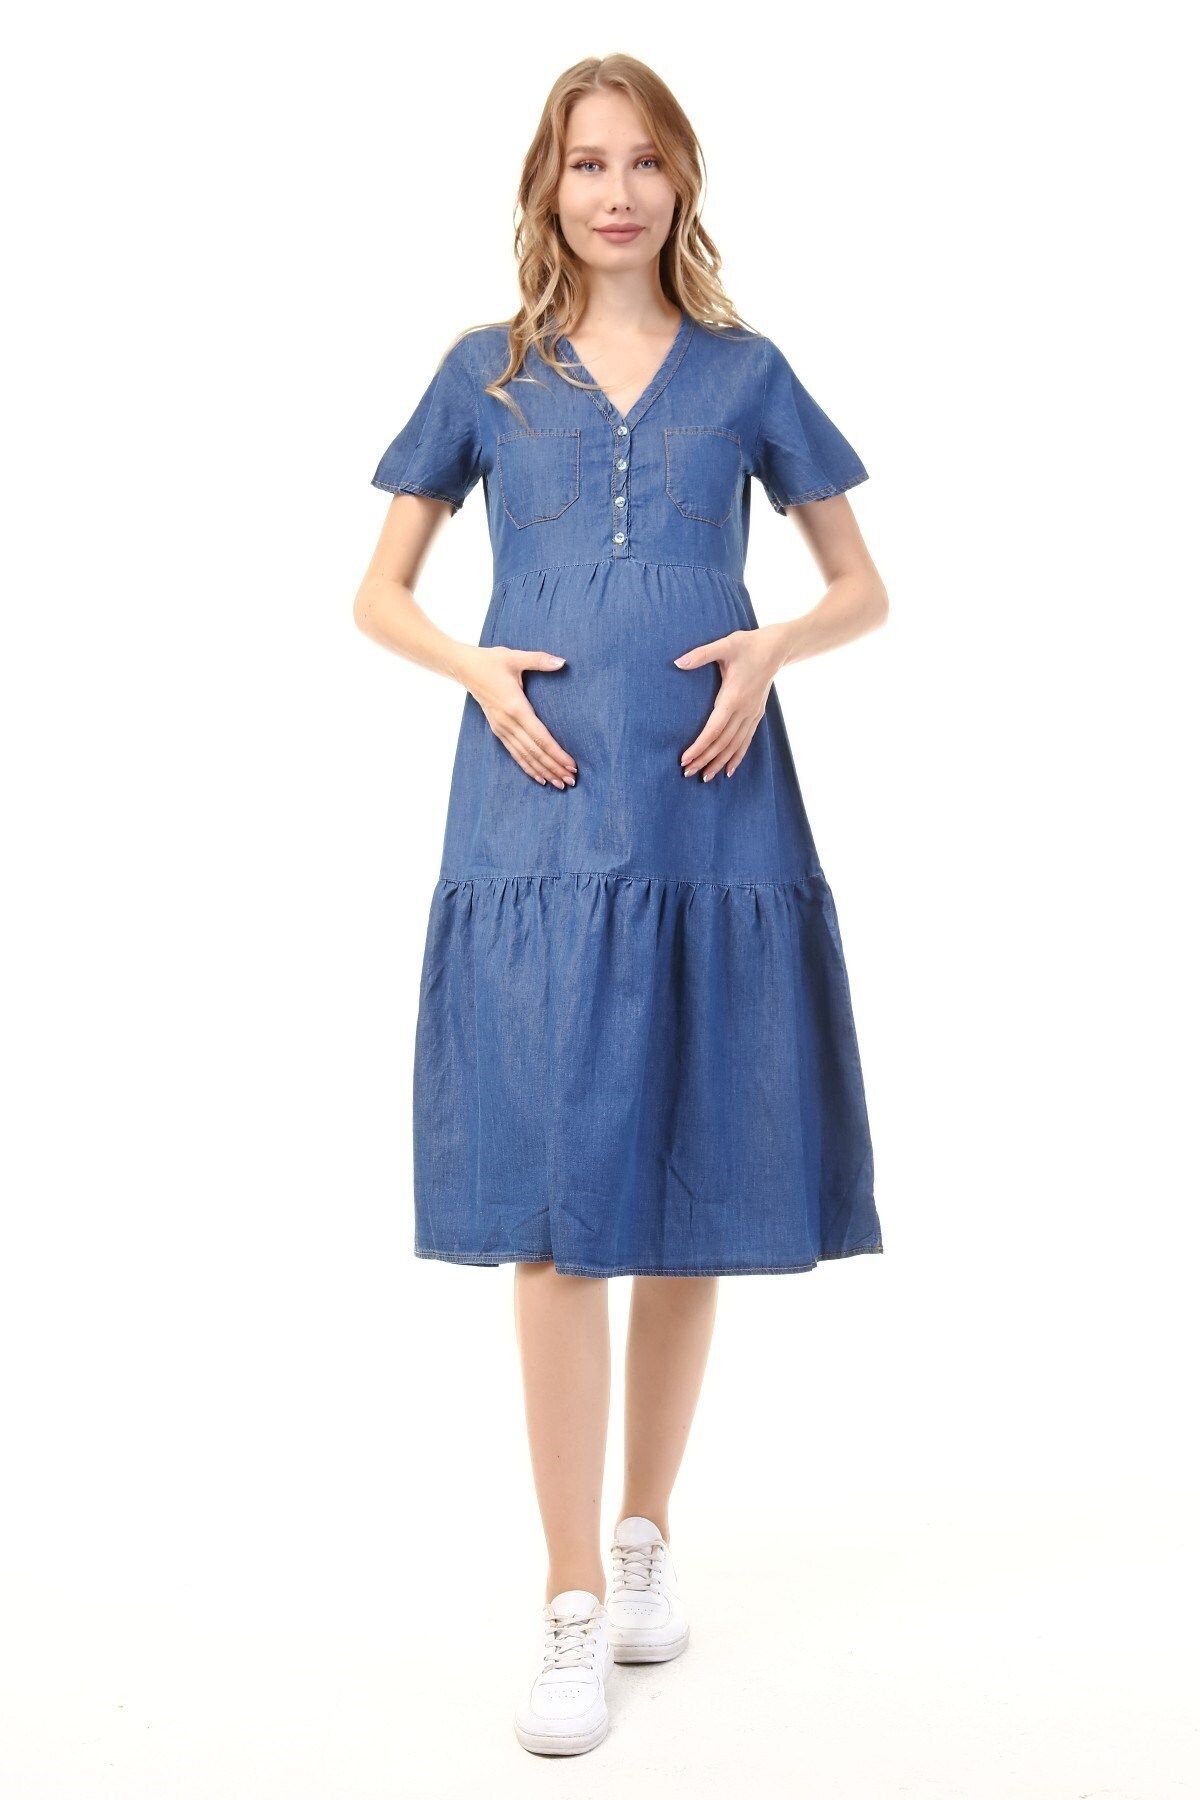 Luvmabelly Myra5025 - Hamile Elbisesi Kot Düğmeli Ve Cepli - Mavi